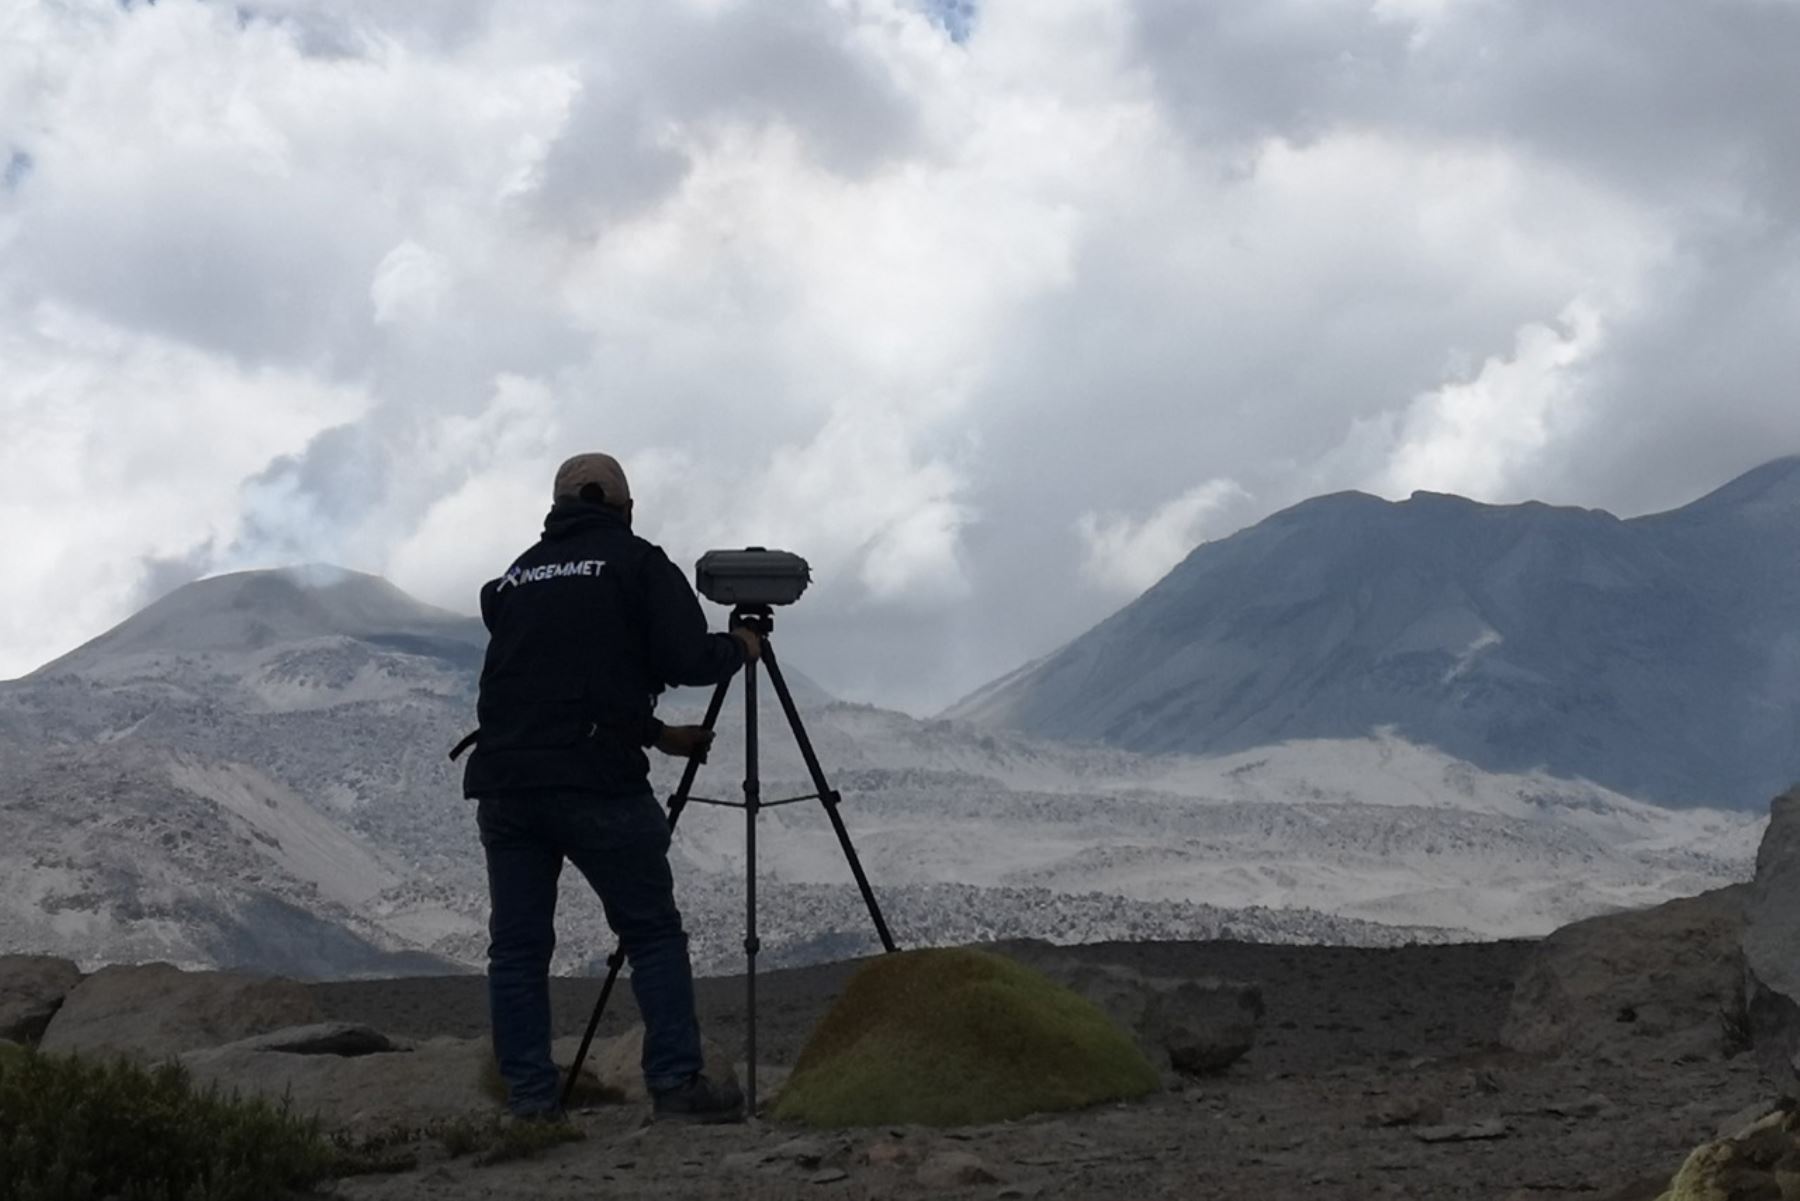 Los volcanes Sabancaya y Ubinas, considerados los más activos del sur del Perú, contribuyen con cerca del 60 % de las emisiones totales de gases en la Zona Volcánica Central de los Andes. Foto: ANDINA/Ingemmet